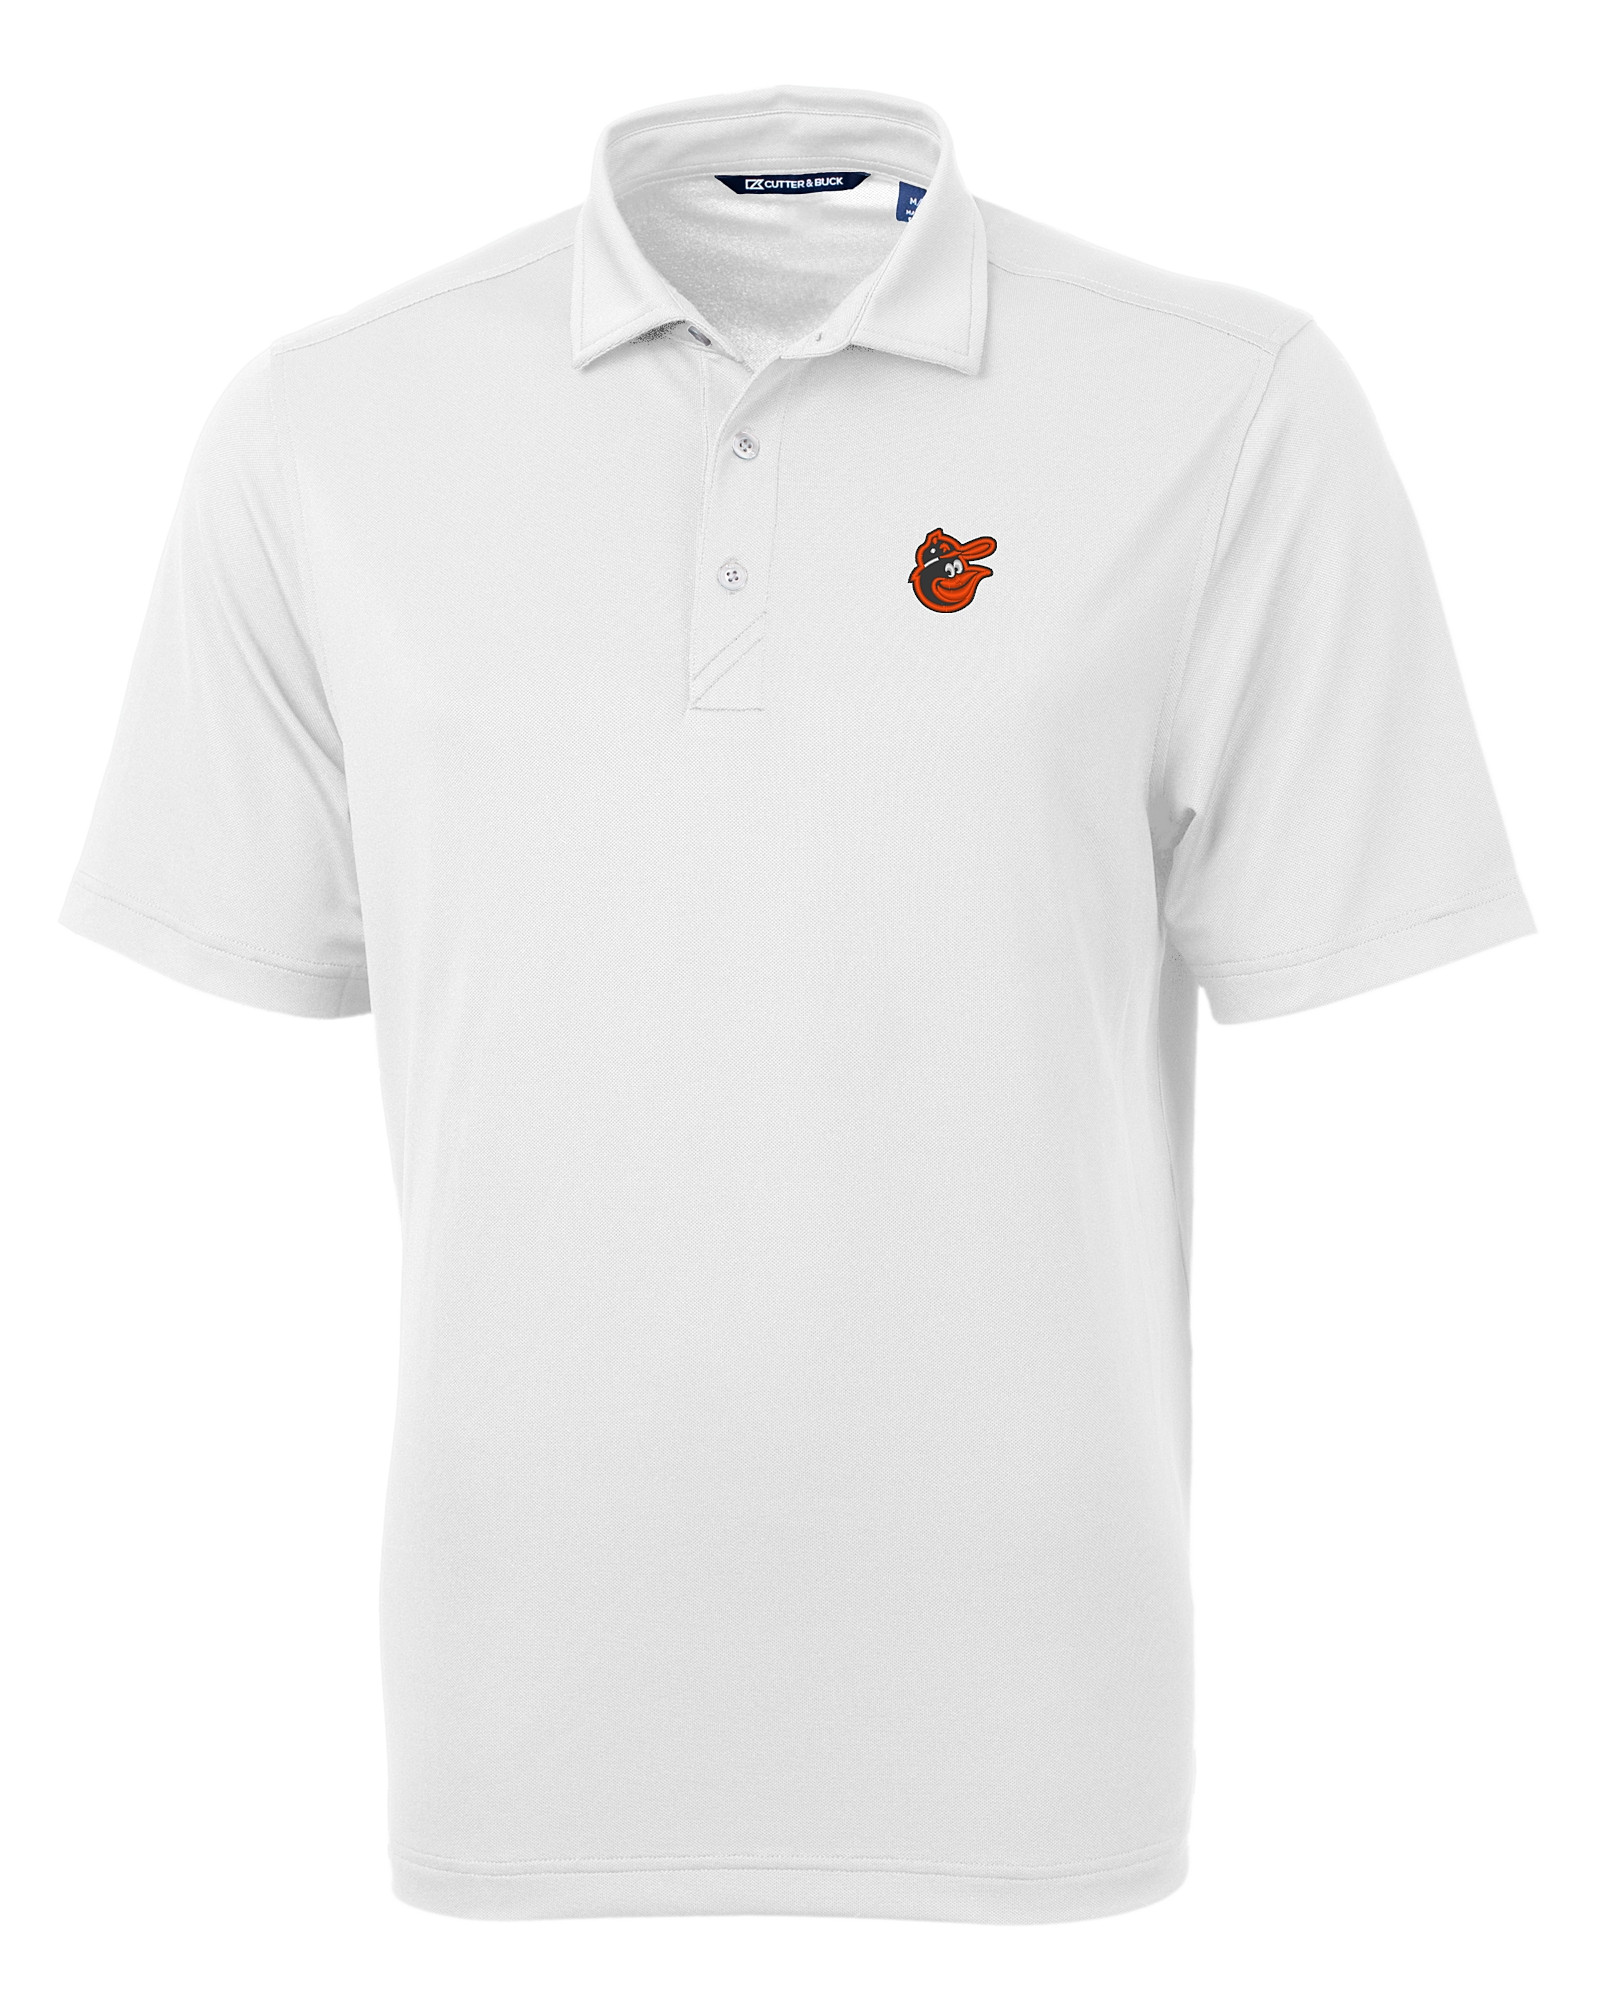 Baltimore Orioles Polos, Golf Shirt, Orioles Polo Shirts